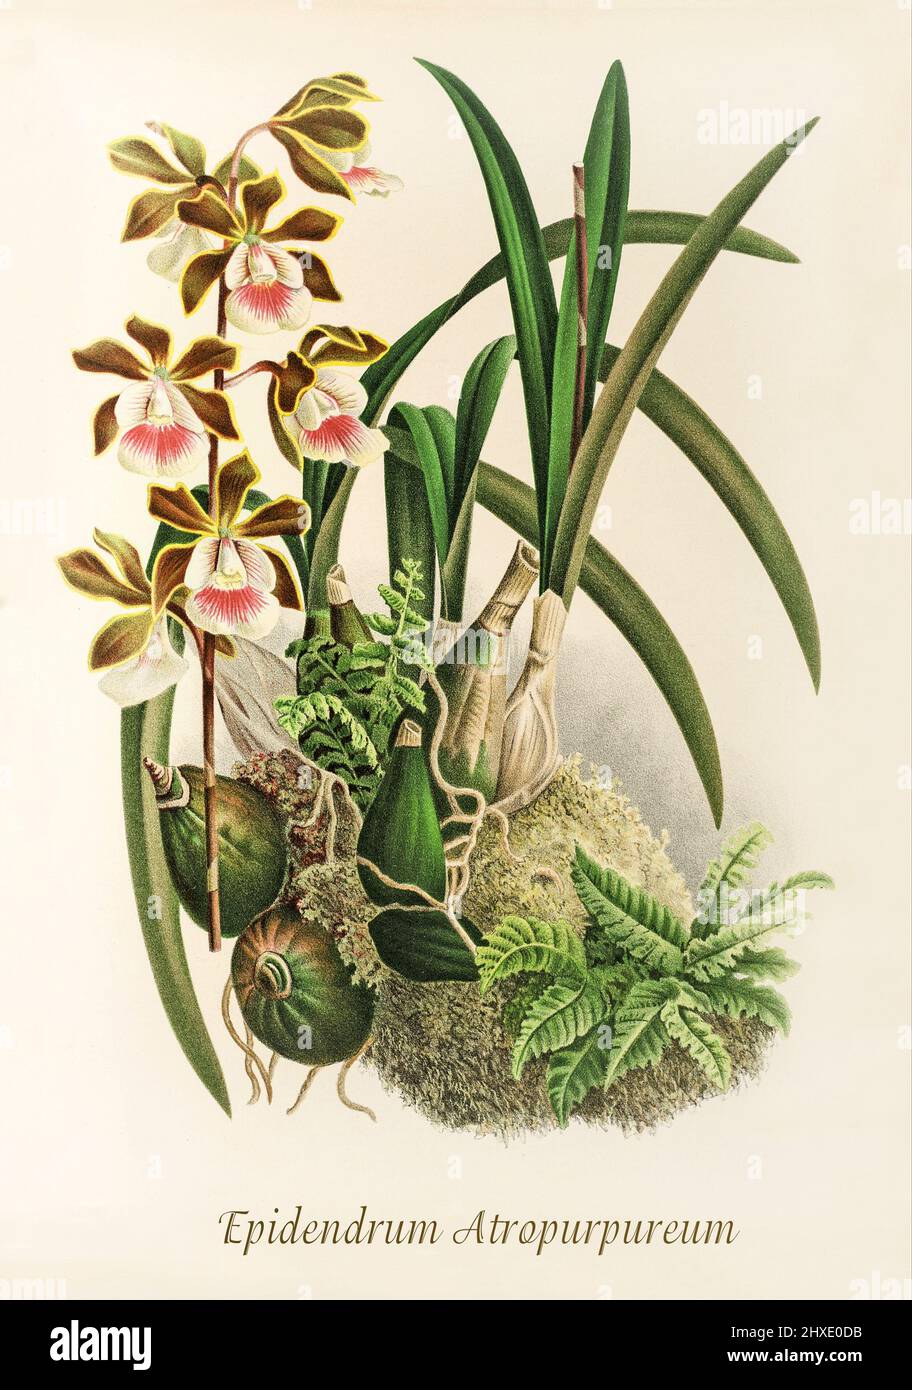 Epidendrum atropurpureum, eine kleine bis mittelgroße Orchidee, die in der Dominikanischen Republik und Haiti in Kaktusdornschrubben, halbtrocken Kiefernwäldern und Laubwäldern in Höhen von bis zu 1100 Metern zu finden ist. Aus der Iconographie des Orchidees, einer Zeitschrift mit botanischen Illustrationen, die von Jean Jules Linden (1817-1898) veröffentlicht wurde, war ein belgischer Botaniker, Forscher und Gartenbauer, der sich auf Orchideen spezialisierte. Stockfoto